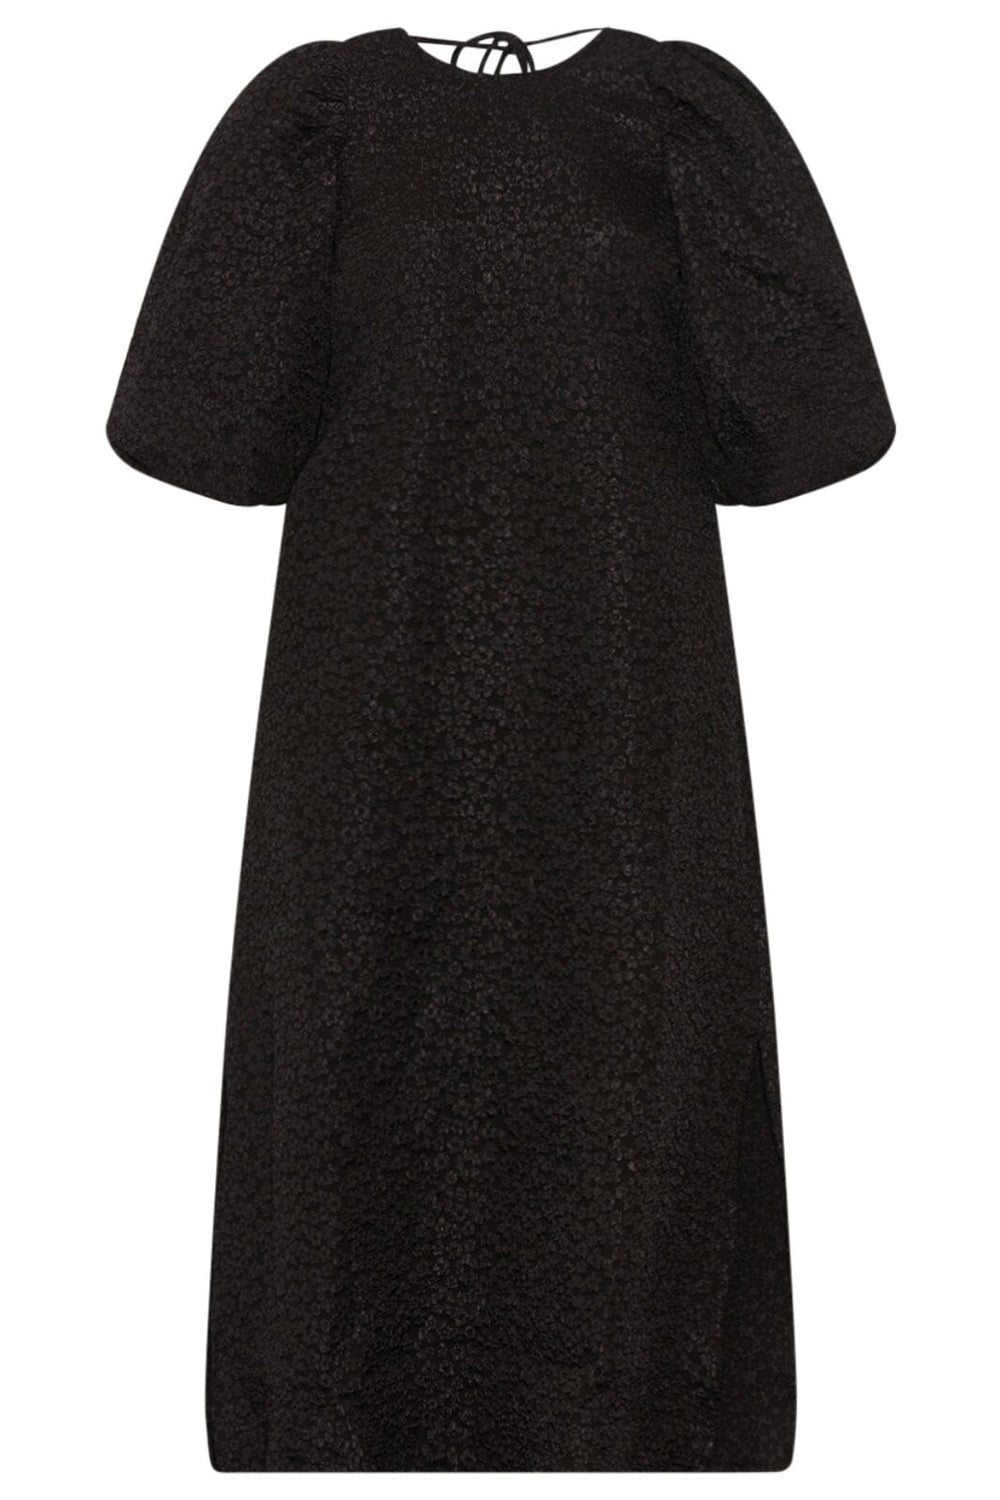 Noella - Reno Pastis Long Dress - 004 Black Kjoler 